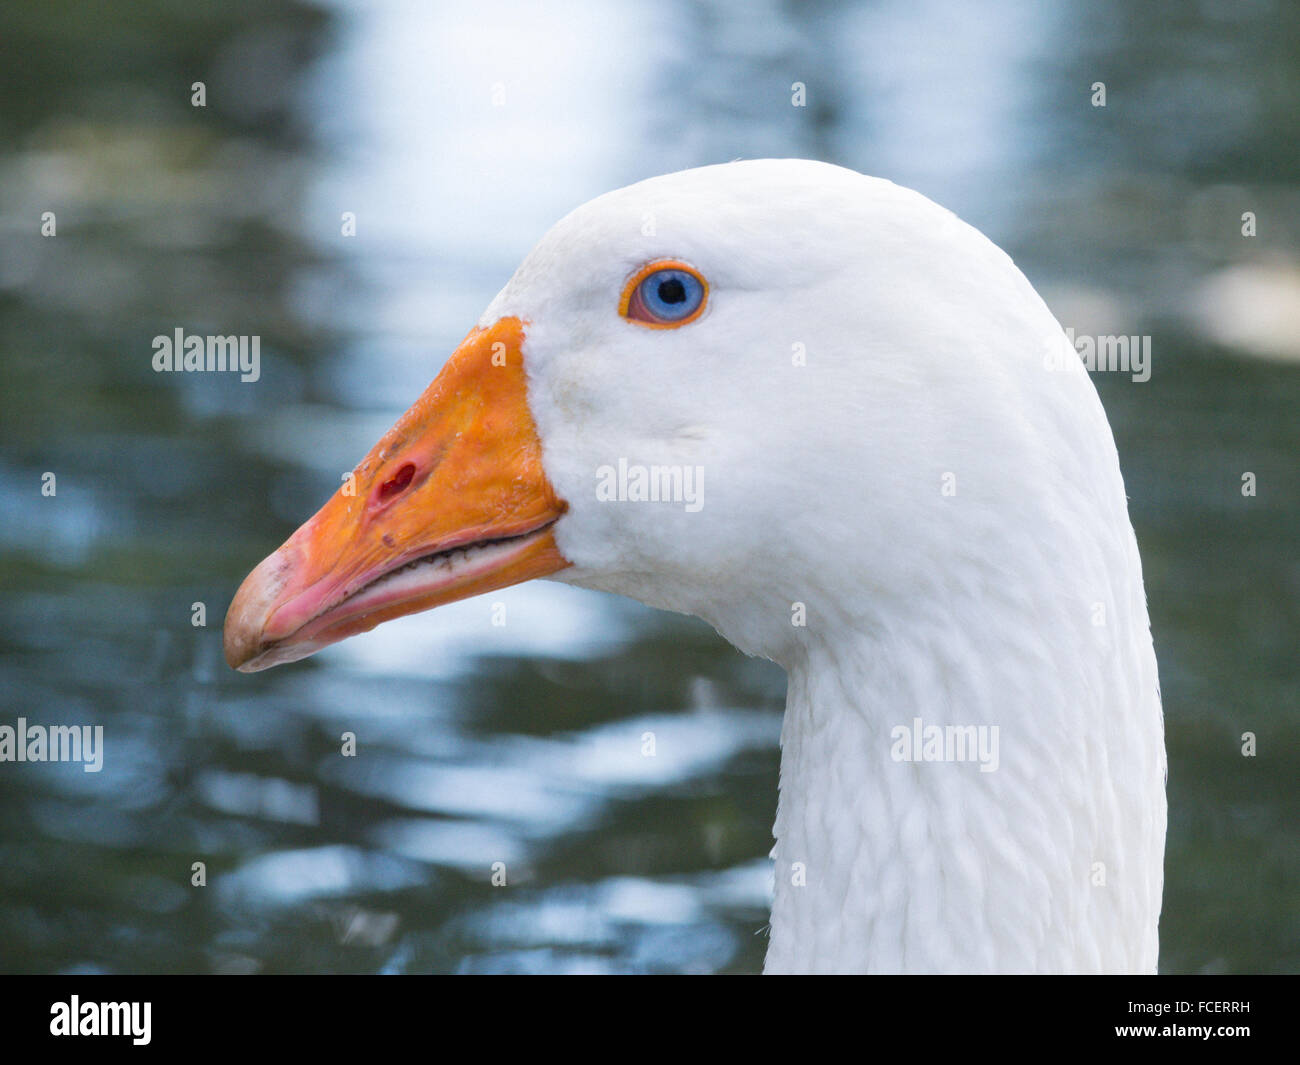 White domestic duck Stock Photo